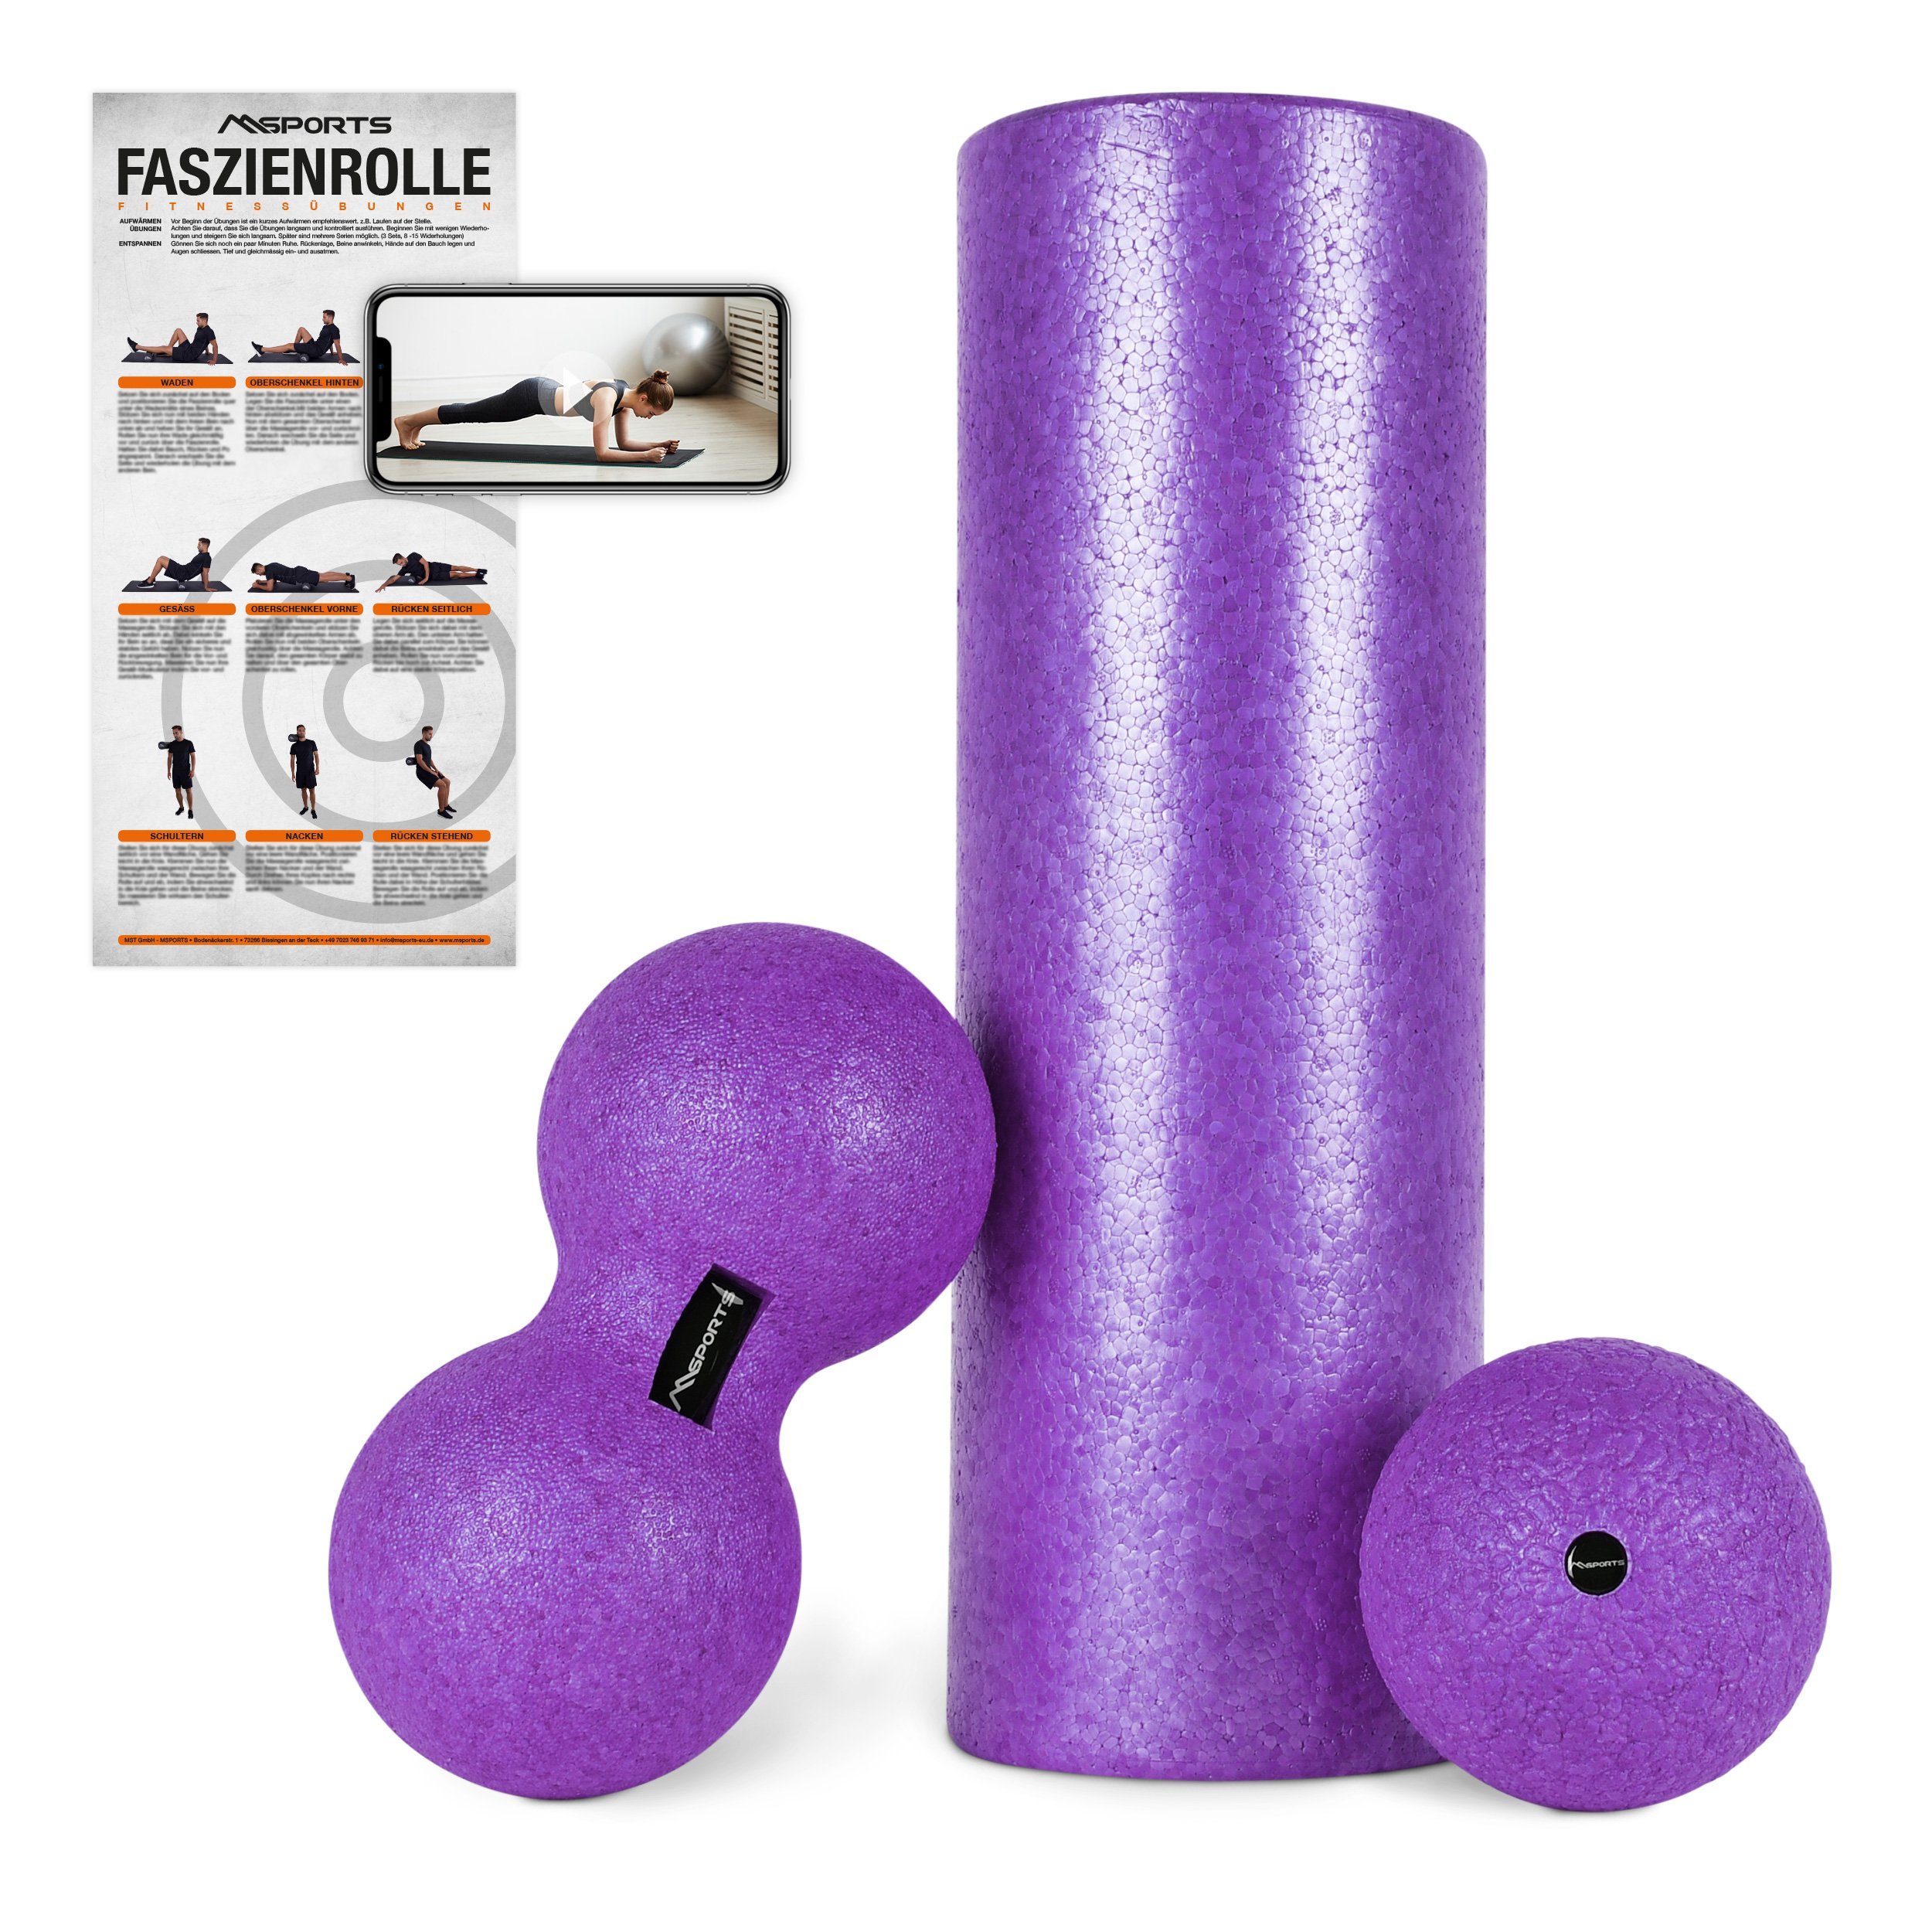 FASZIENSET Peanutball Massageball Massagerolle Violett + Massagerolle 3er - Set + MSports®